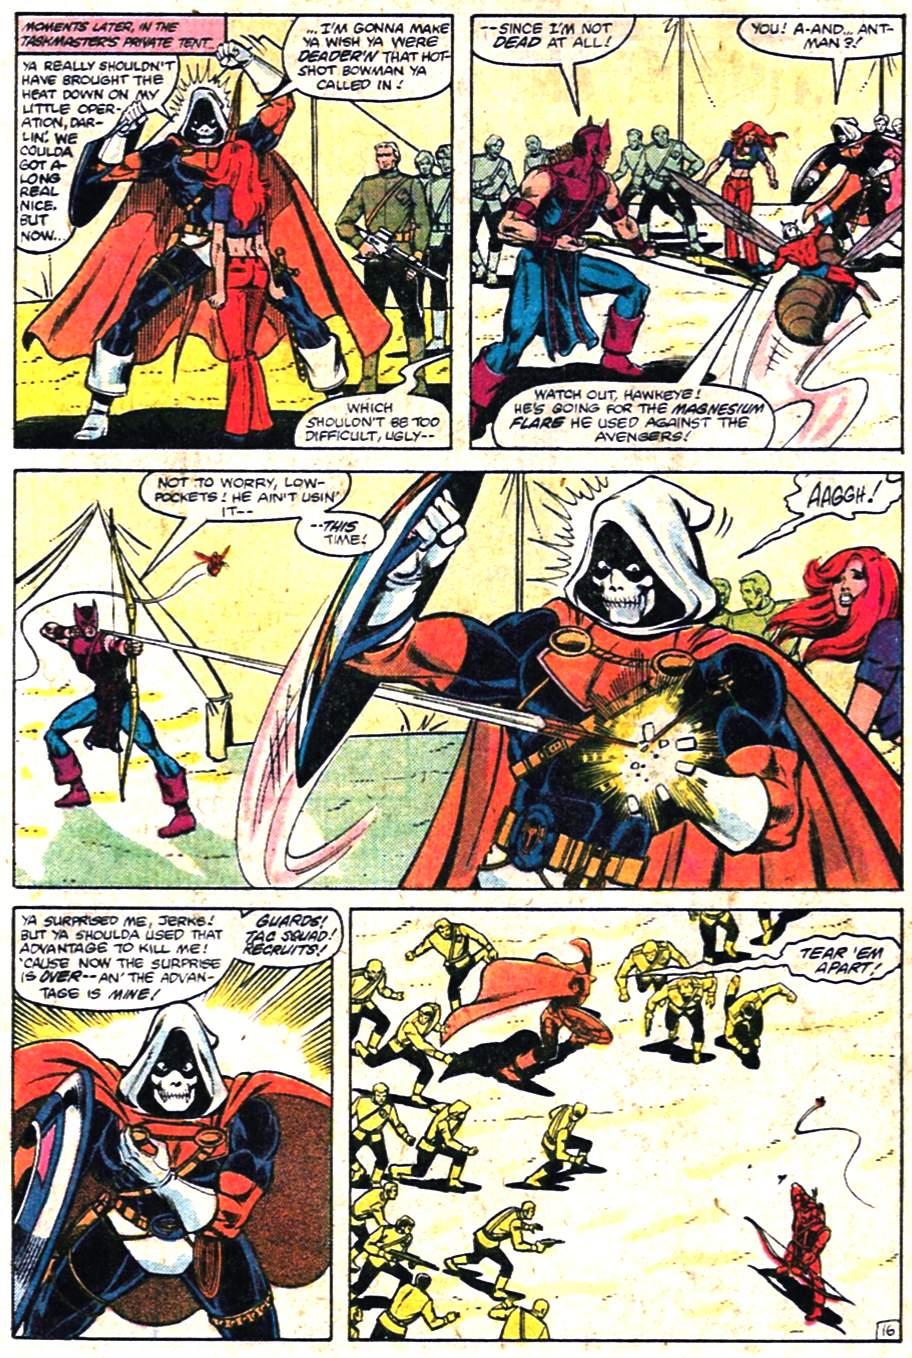 Hawkeye vs. Taskmaster (The Avengers #223, 1982)